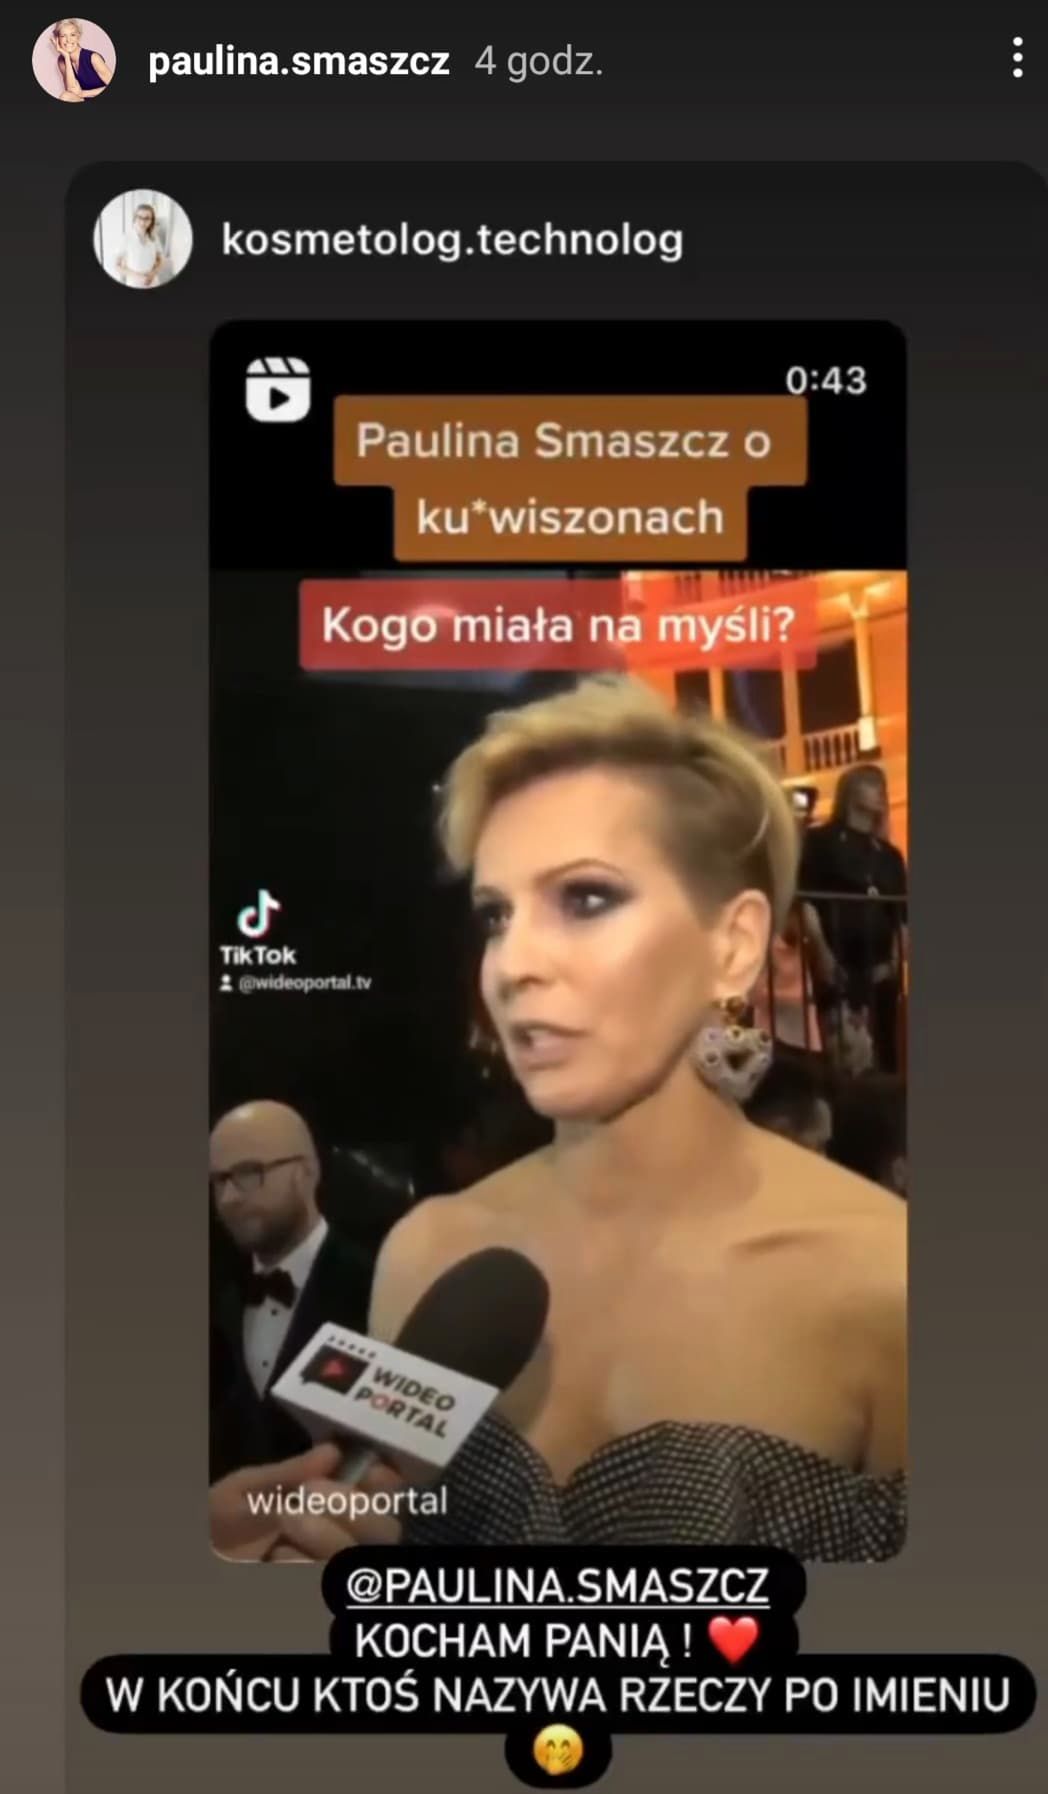 Paulina Smaszcz mówi o "ku*wiszonach"